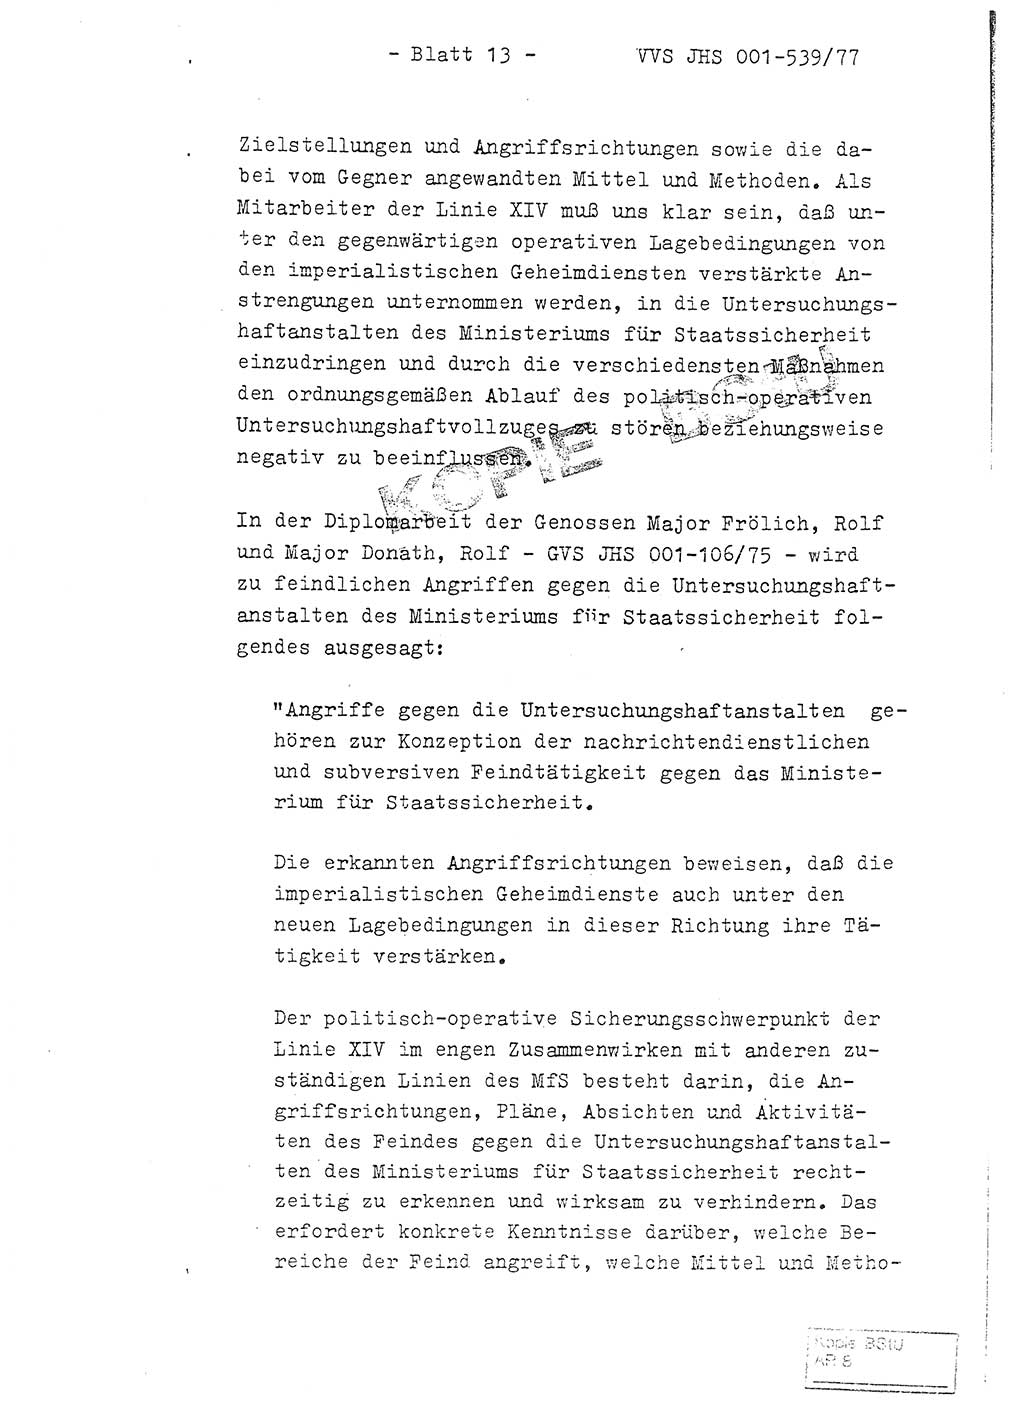 Fachschulabschlußarbeit Hauptmann Dietrich Jung (Abt. ⅩⅣ), Leutnant Klaus Klötzner (Abt. ⅩⅣ), Ministerium für Staatssicherheit (MfS) [Deutsche Demokratische Republik (DDR)], Juristische Hochschule (JHS), Vertrauliche Verschlußsache (VVS) 001-539/77, Potsdam 1978, Seite 13 (FS-Abschl.-Arb. MfS DDR JHS VVS 001-539/77 1978, S. 13)